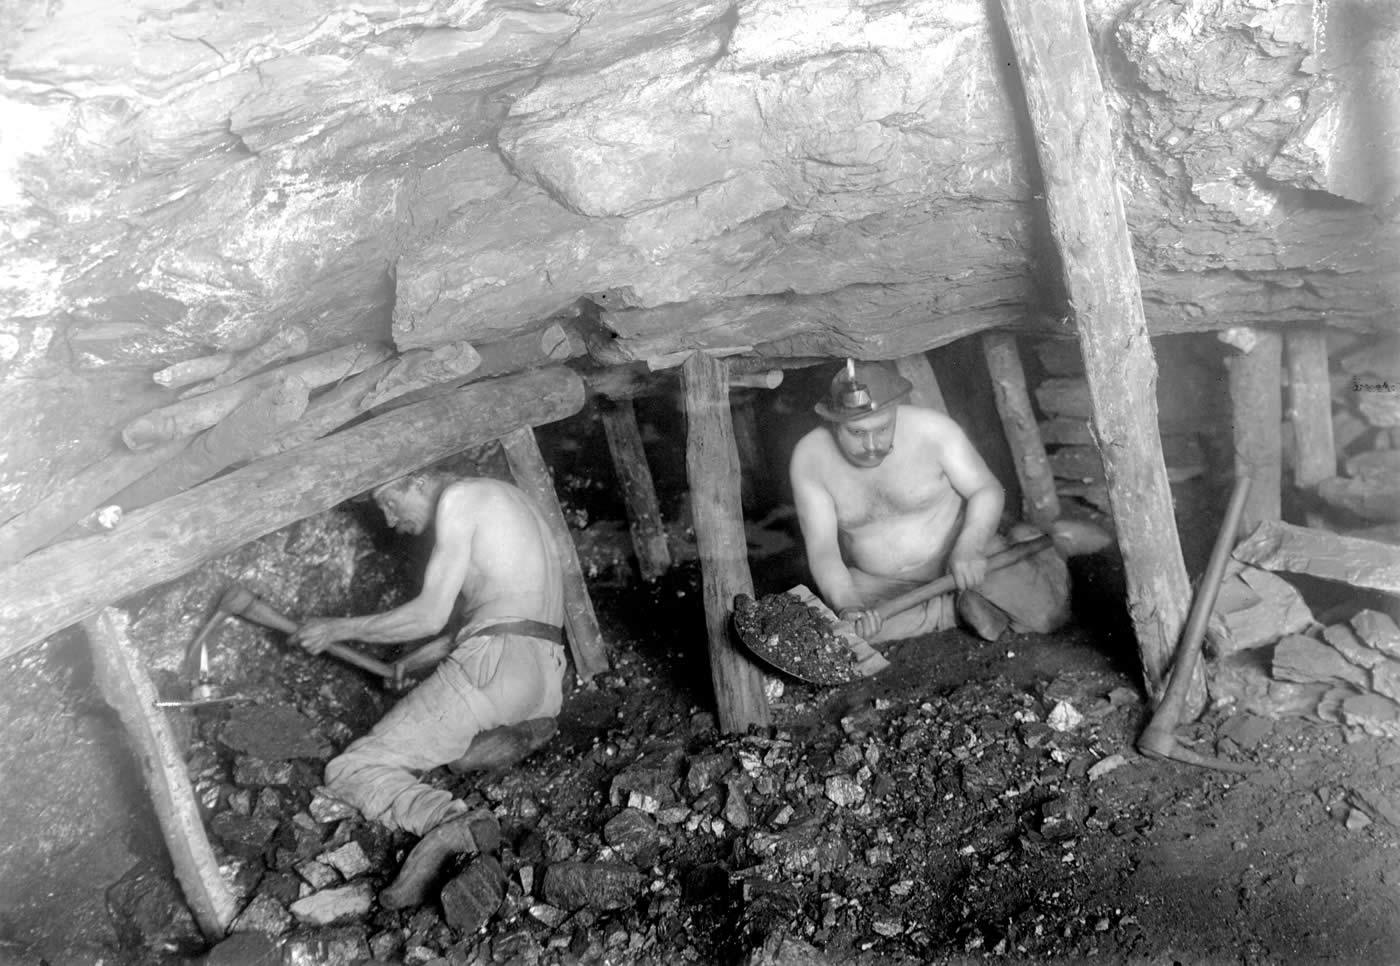 Mineurs de fond procédant à l’abattage du charbon. Joseph Philibert QUENTIN (1857 - 1946) Musée des Beaux-Arts d'Arras